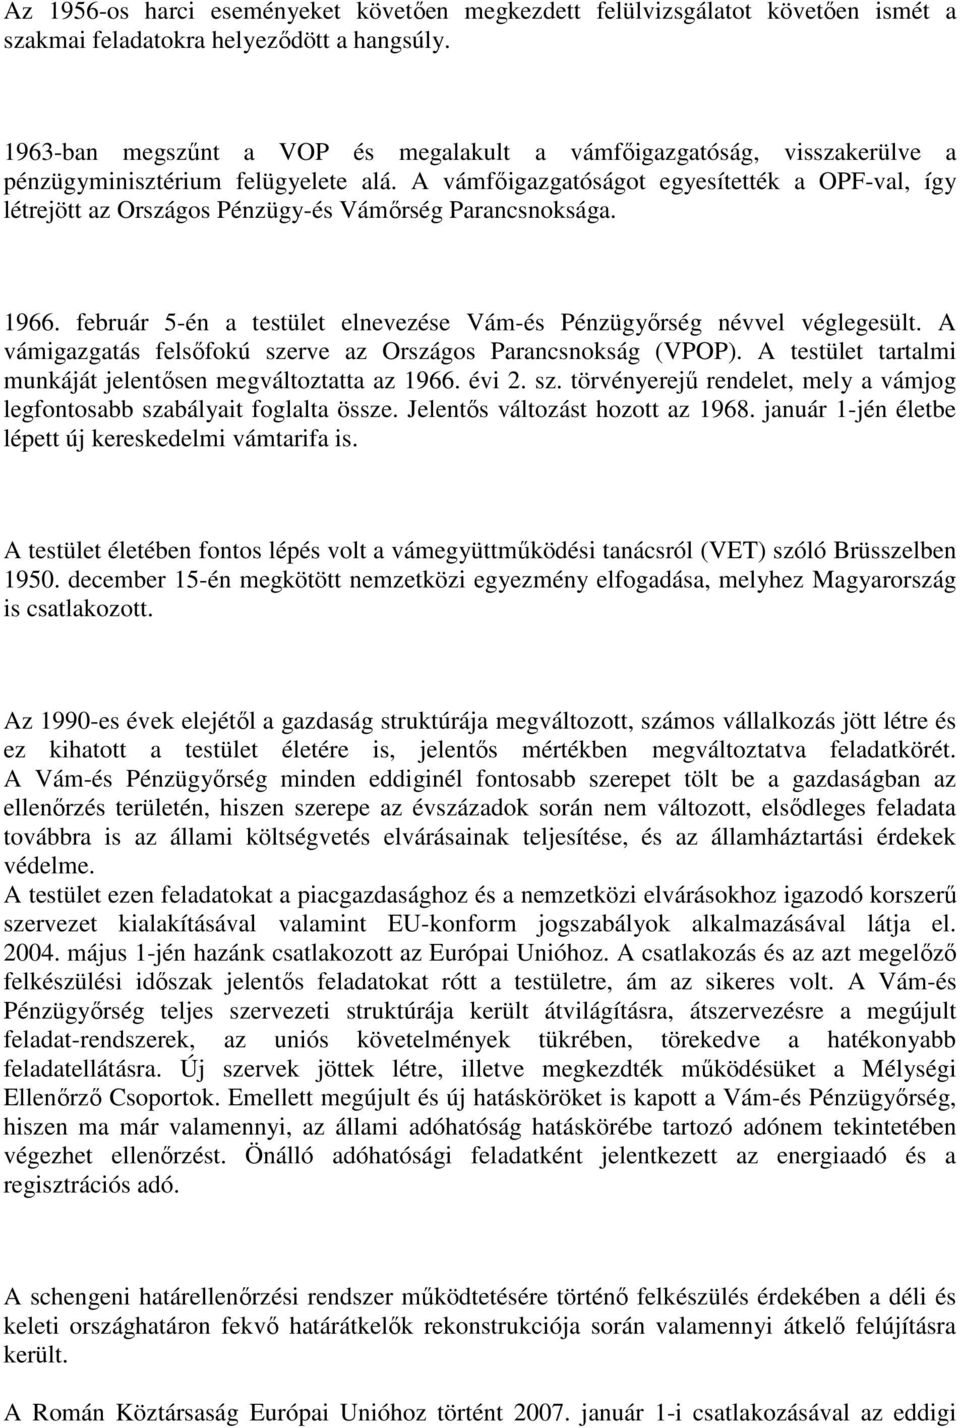 A vámfıigazgatóságot egyesítették a OPF-val, így létrejött az Országos Pénzügy-és Vámırség Parancsnoksága. 1966. február 5-én a testület elnevezése Vám-és Pénzügyırség névvel véglegesült.